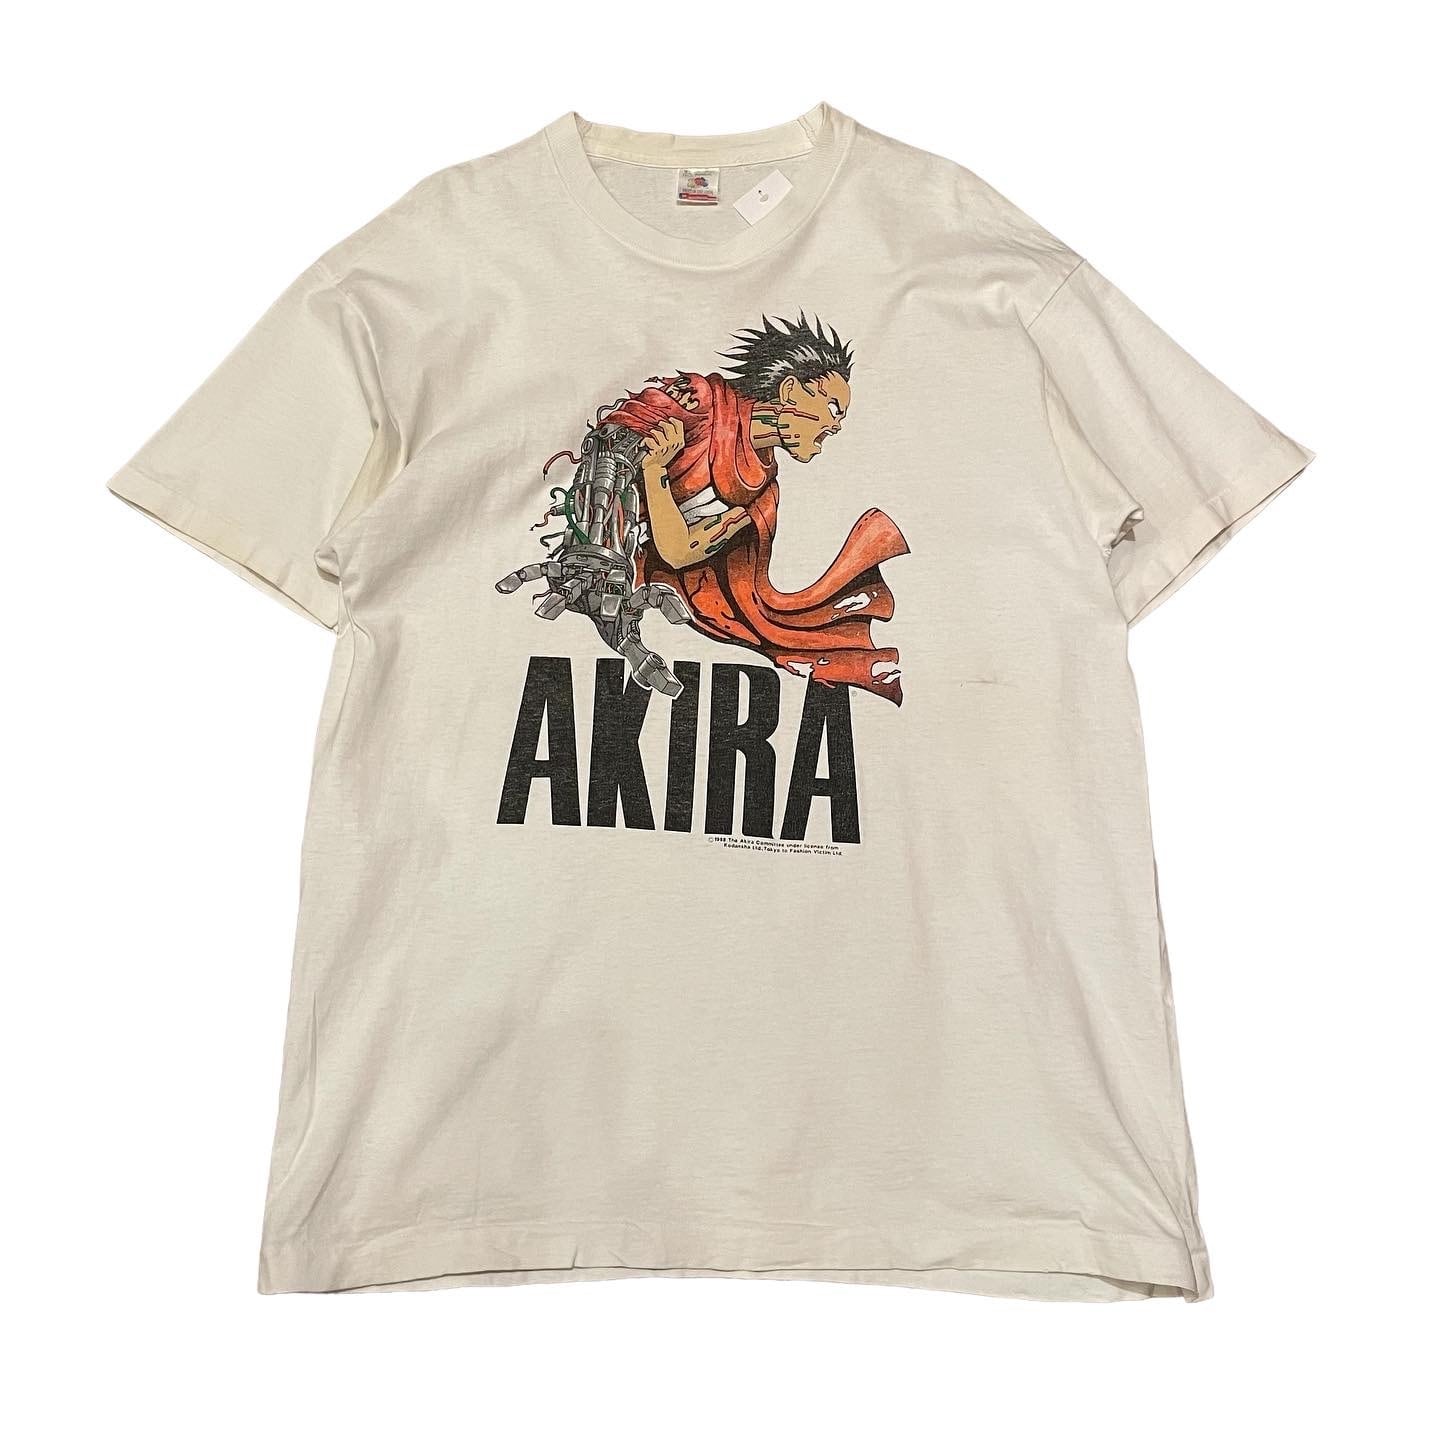 AKIRA アキラ 鉄雄 大友克洋 Tシャツ XL - トップス